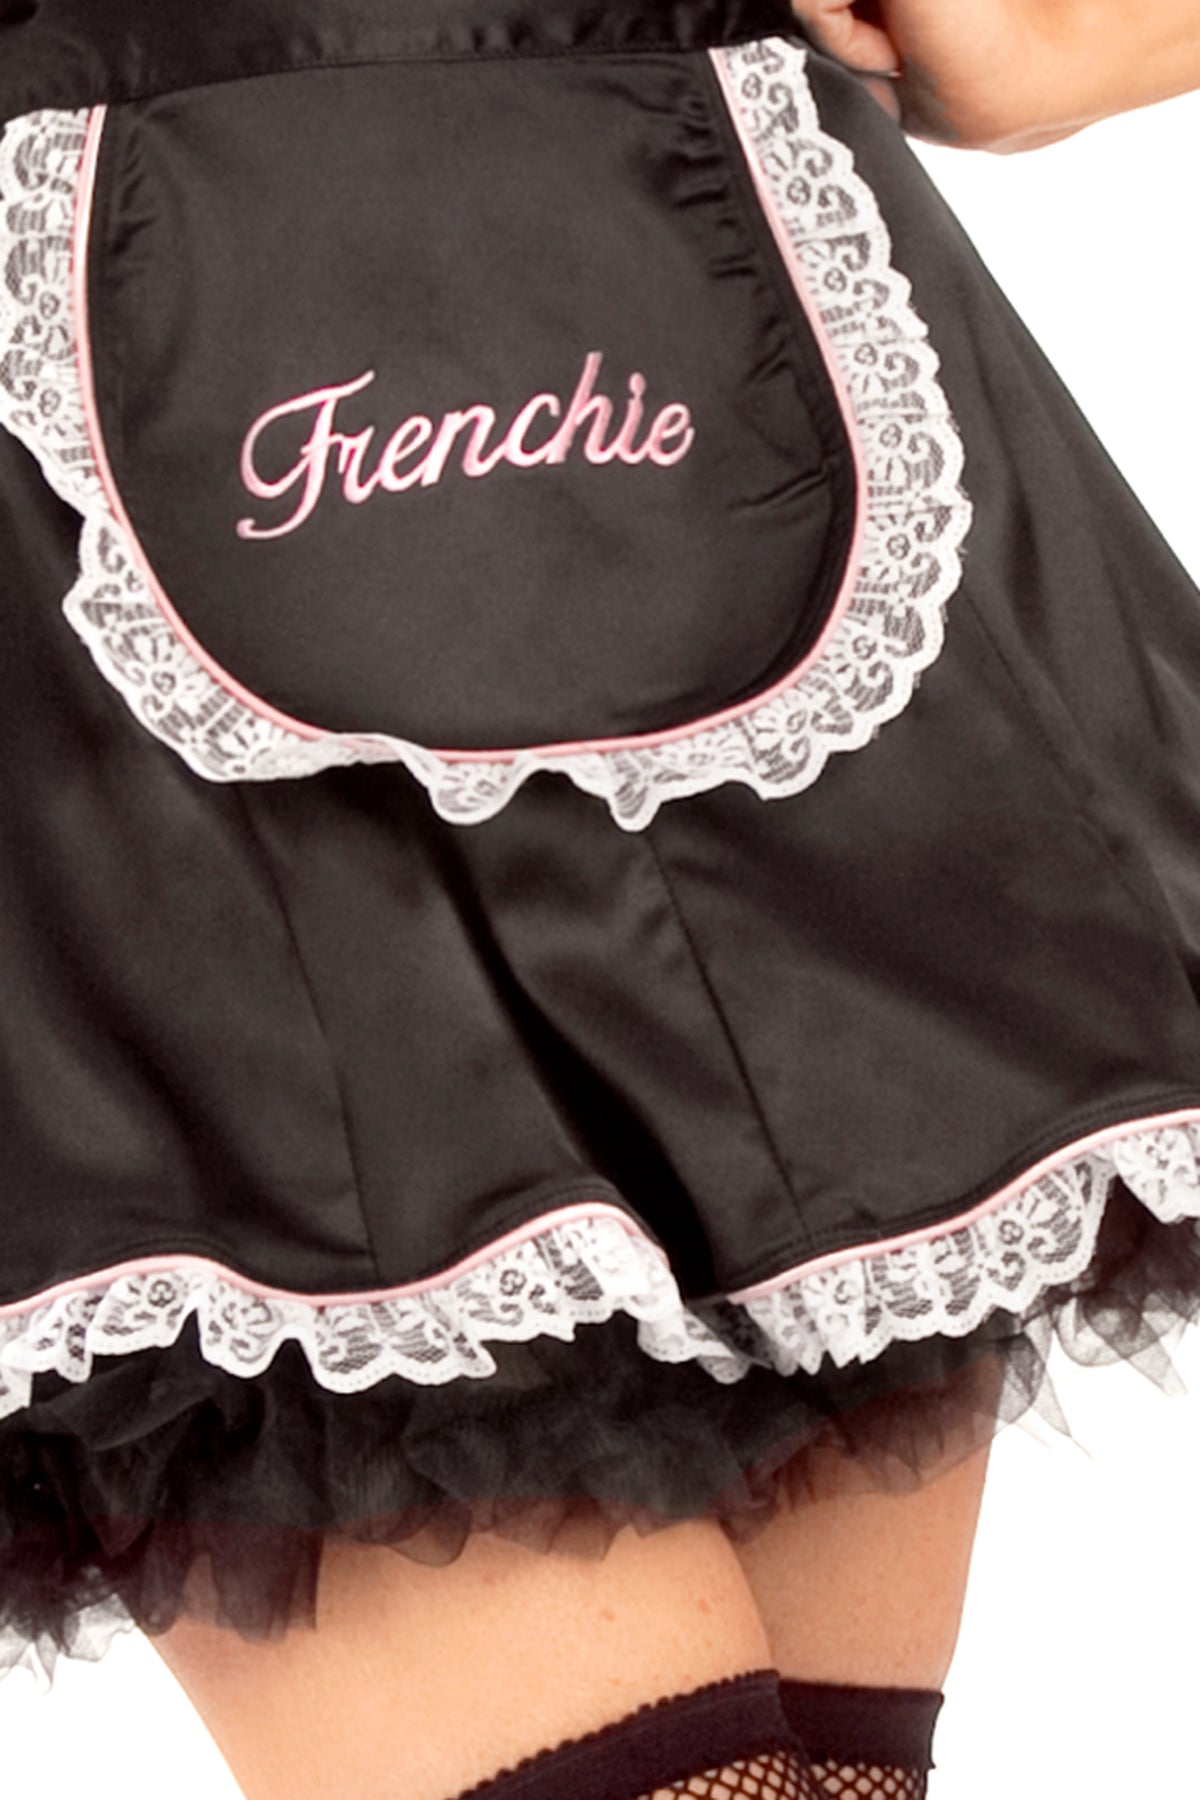 Frenchie Dress